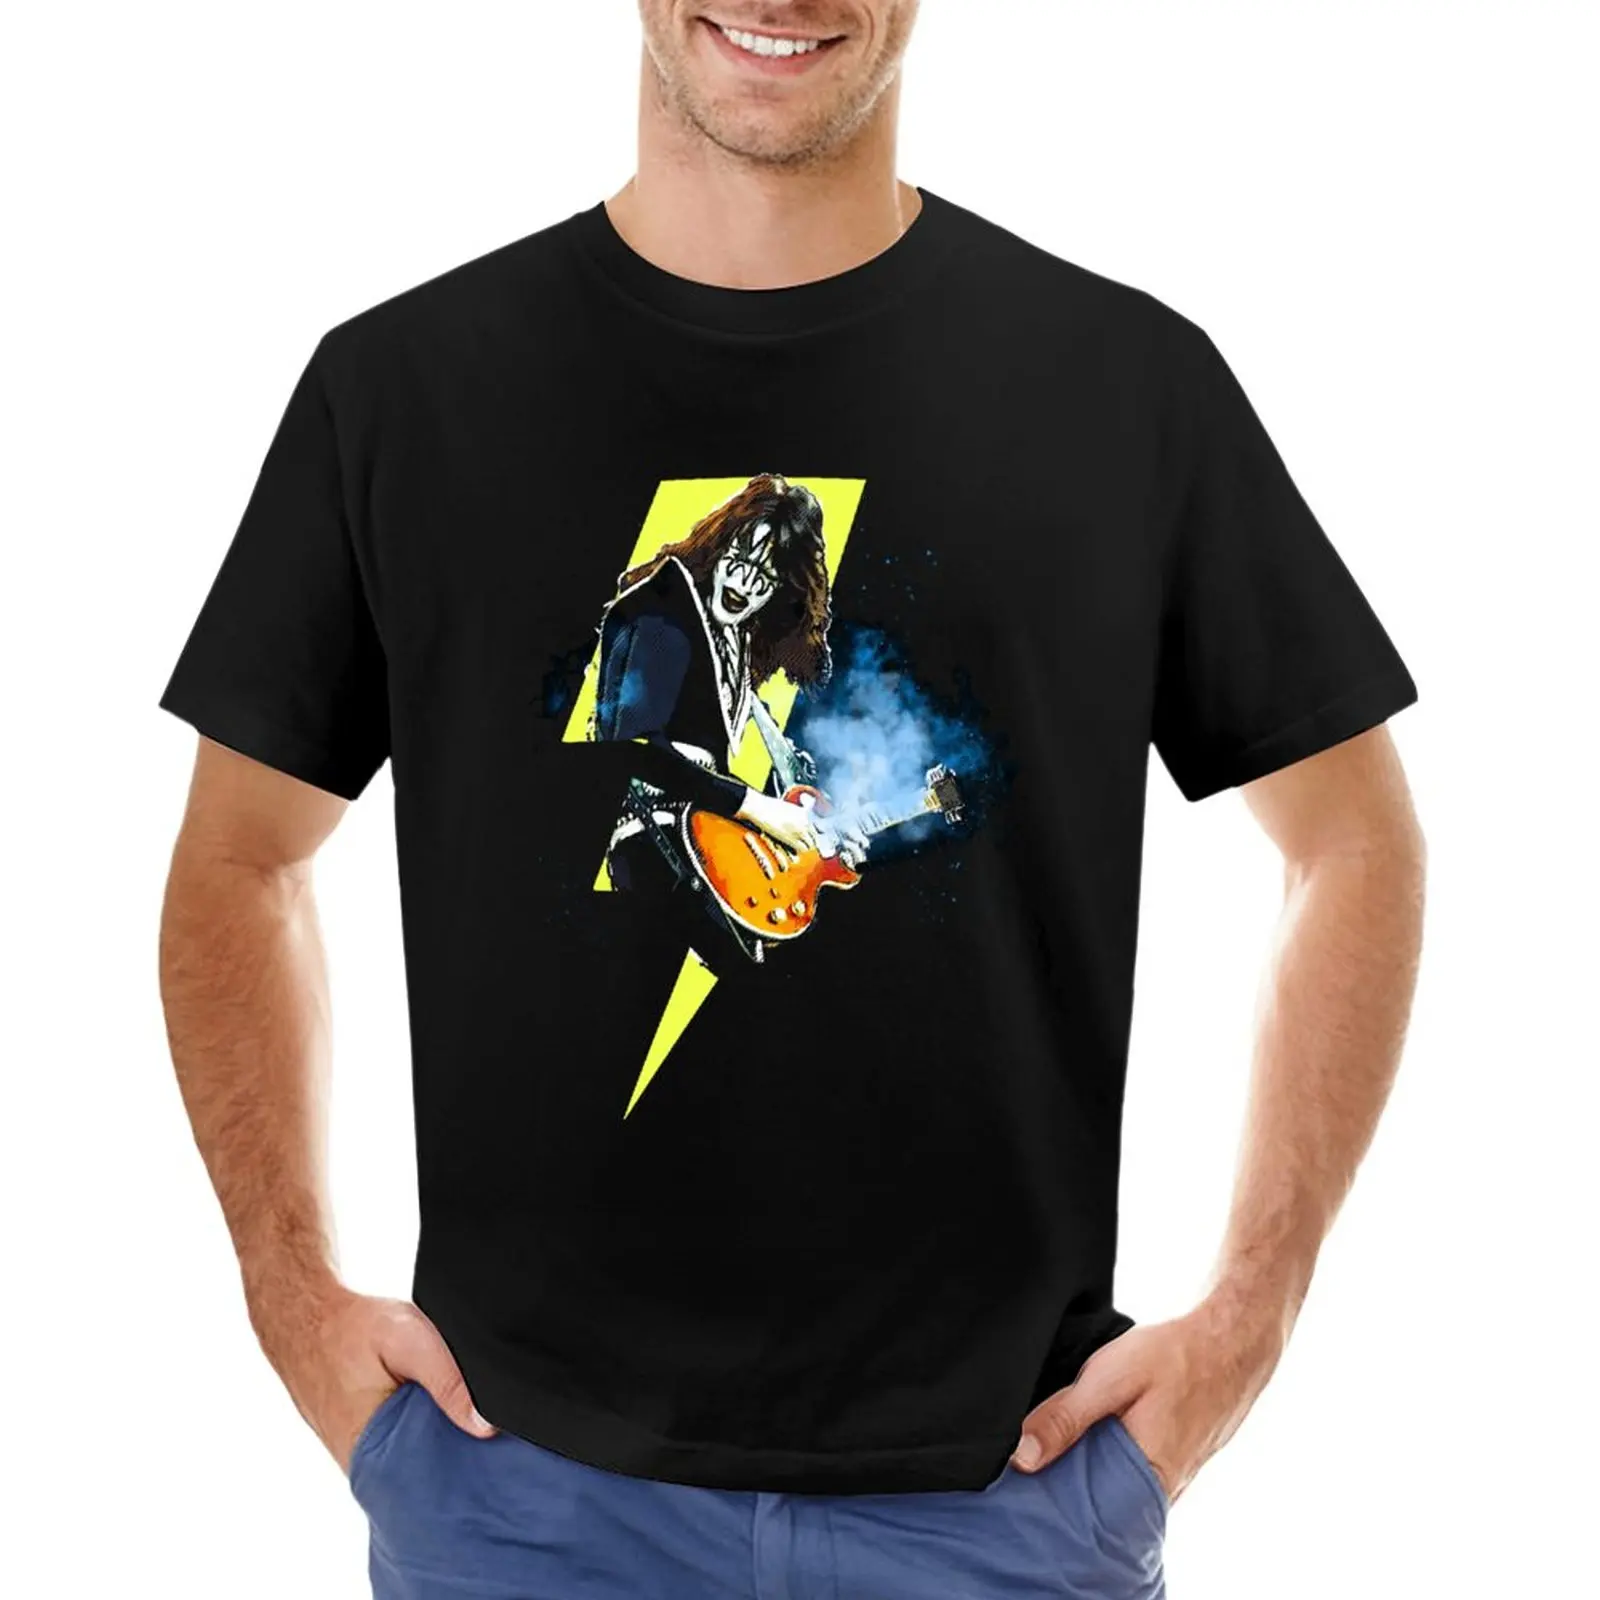 Футболка KISS Ace Frehley Shock Me, футболка с животным принтом для мальчиков, спортивная рубашка, мужская тренировочная рубашка